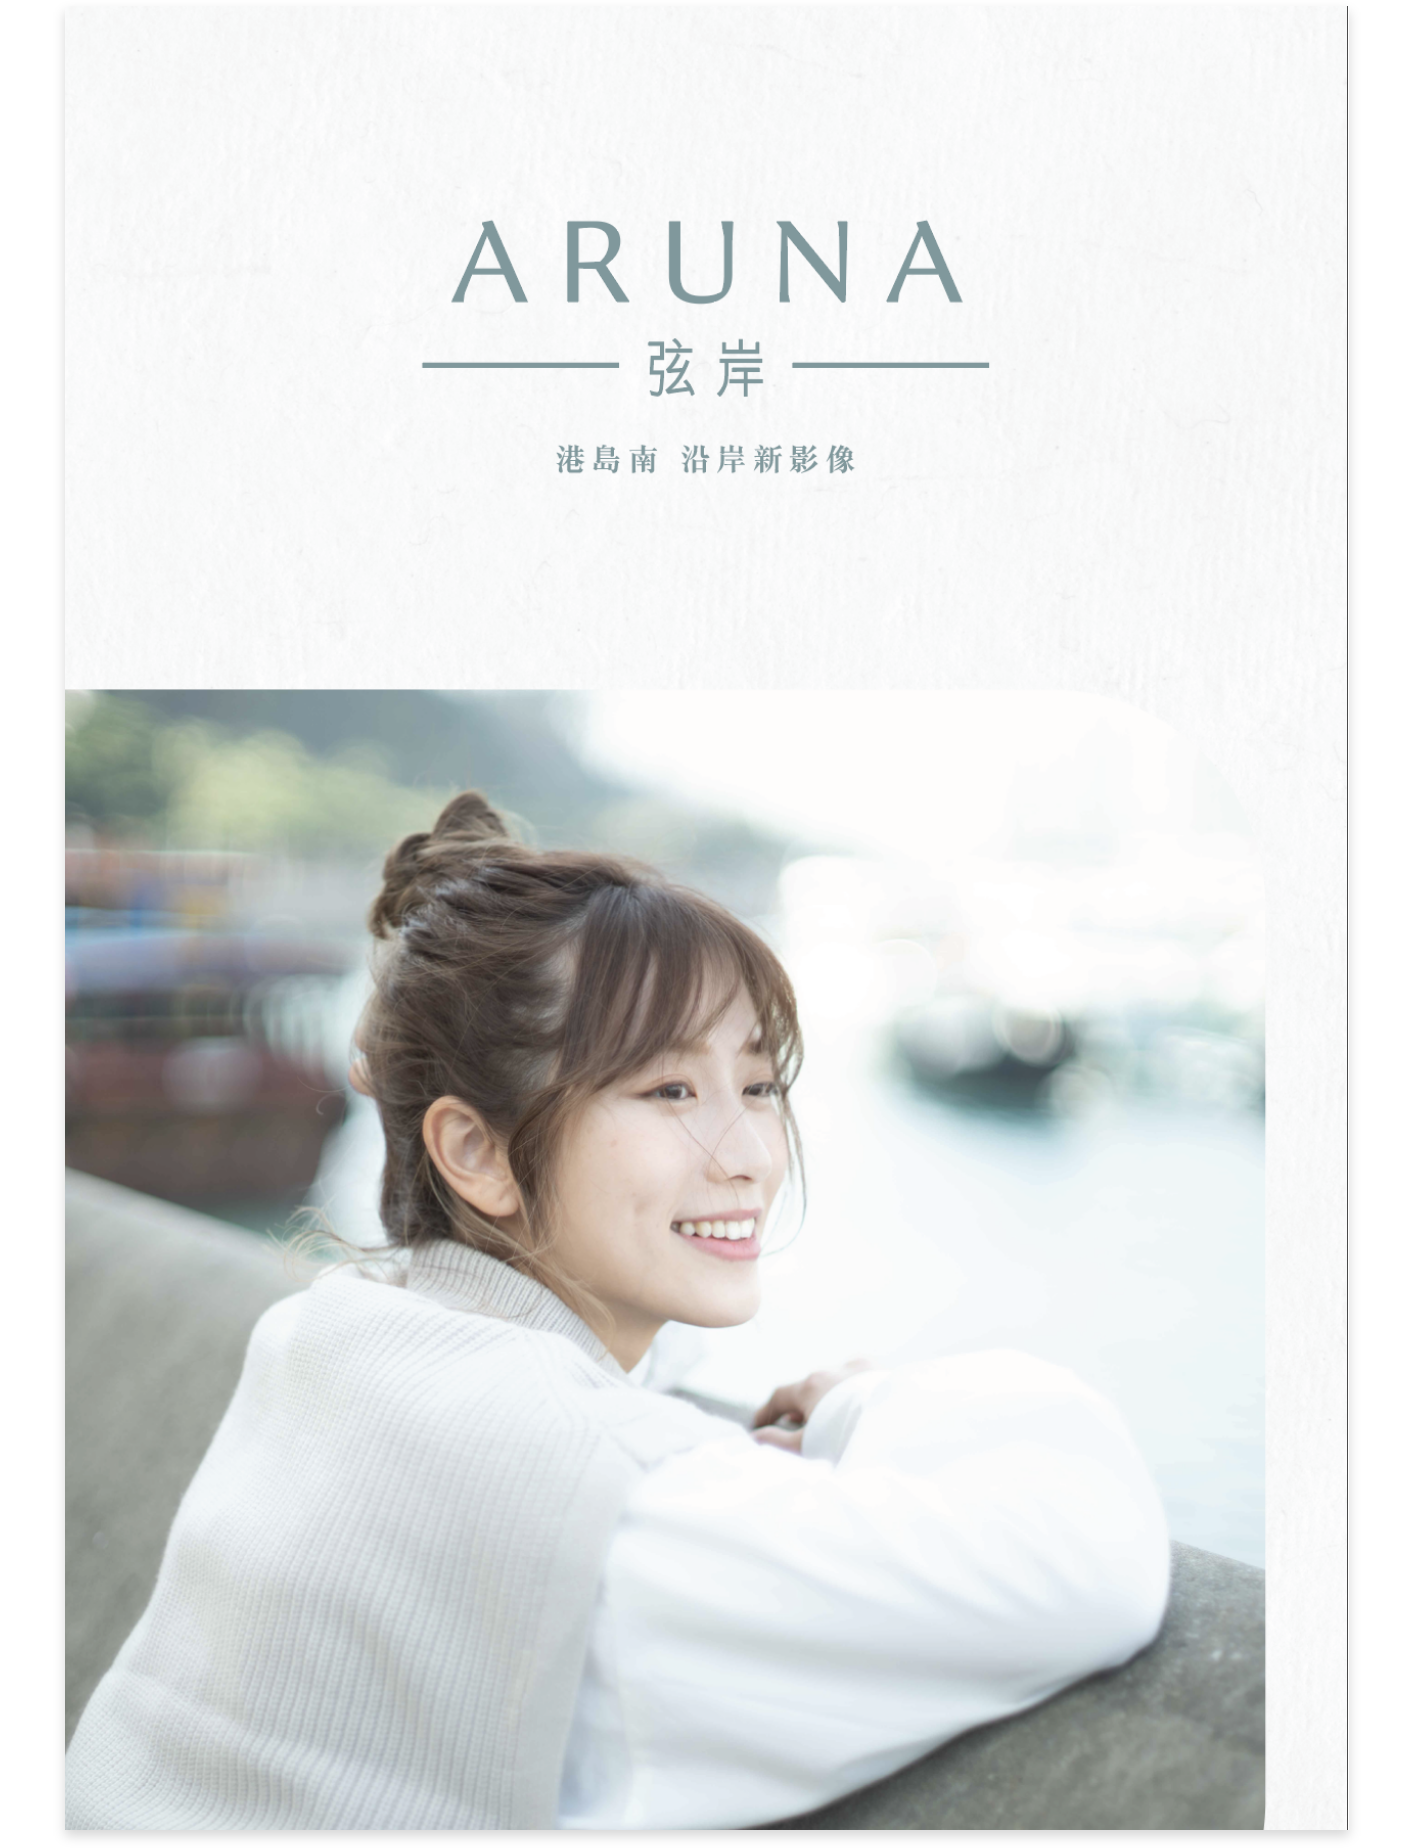 Aruna - Leaflet